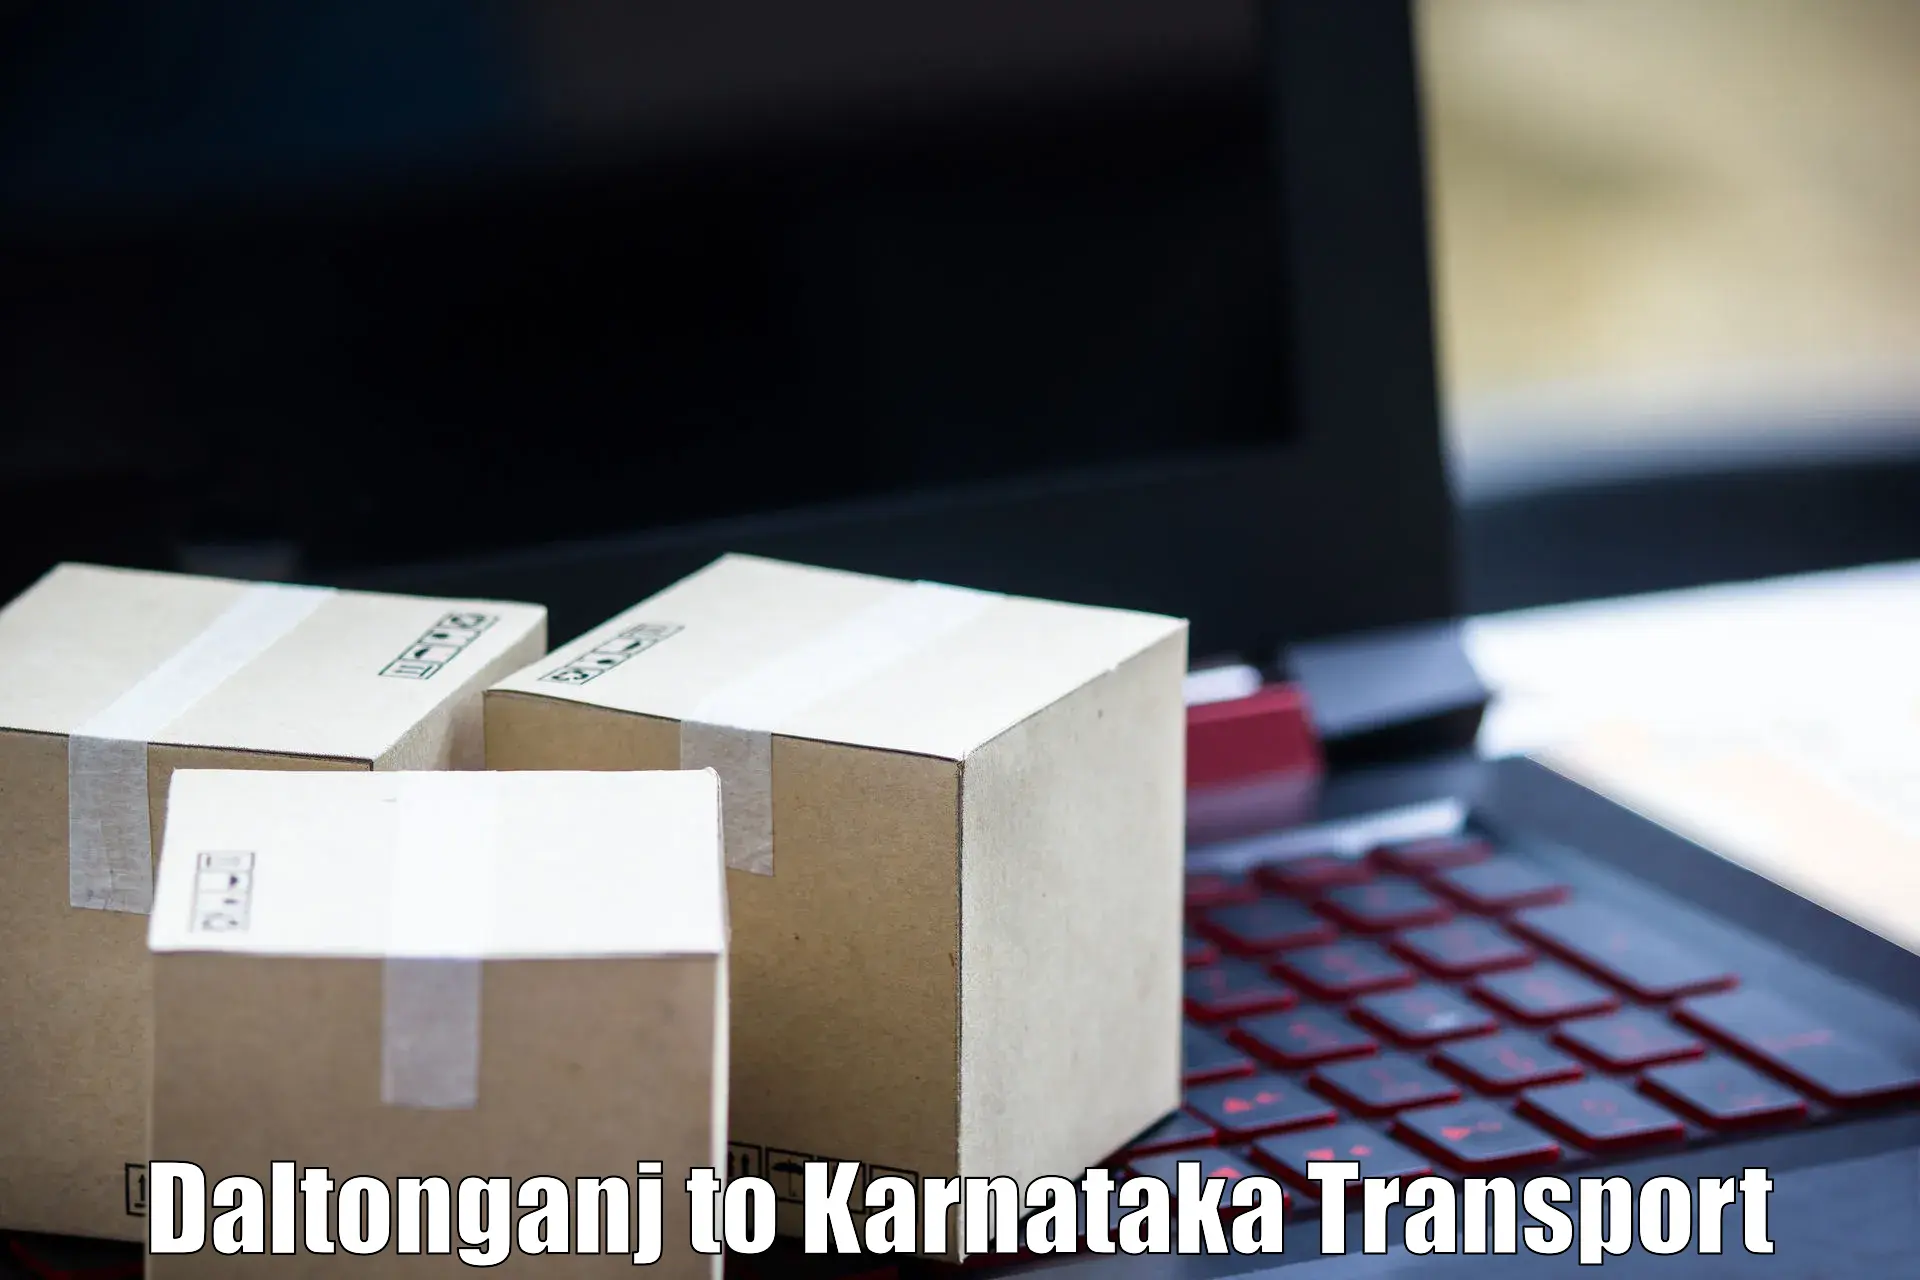 Online transport booking in Daltonganj to Yelburga